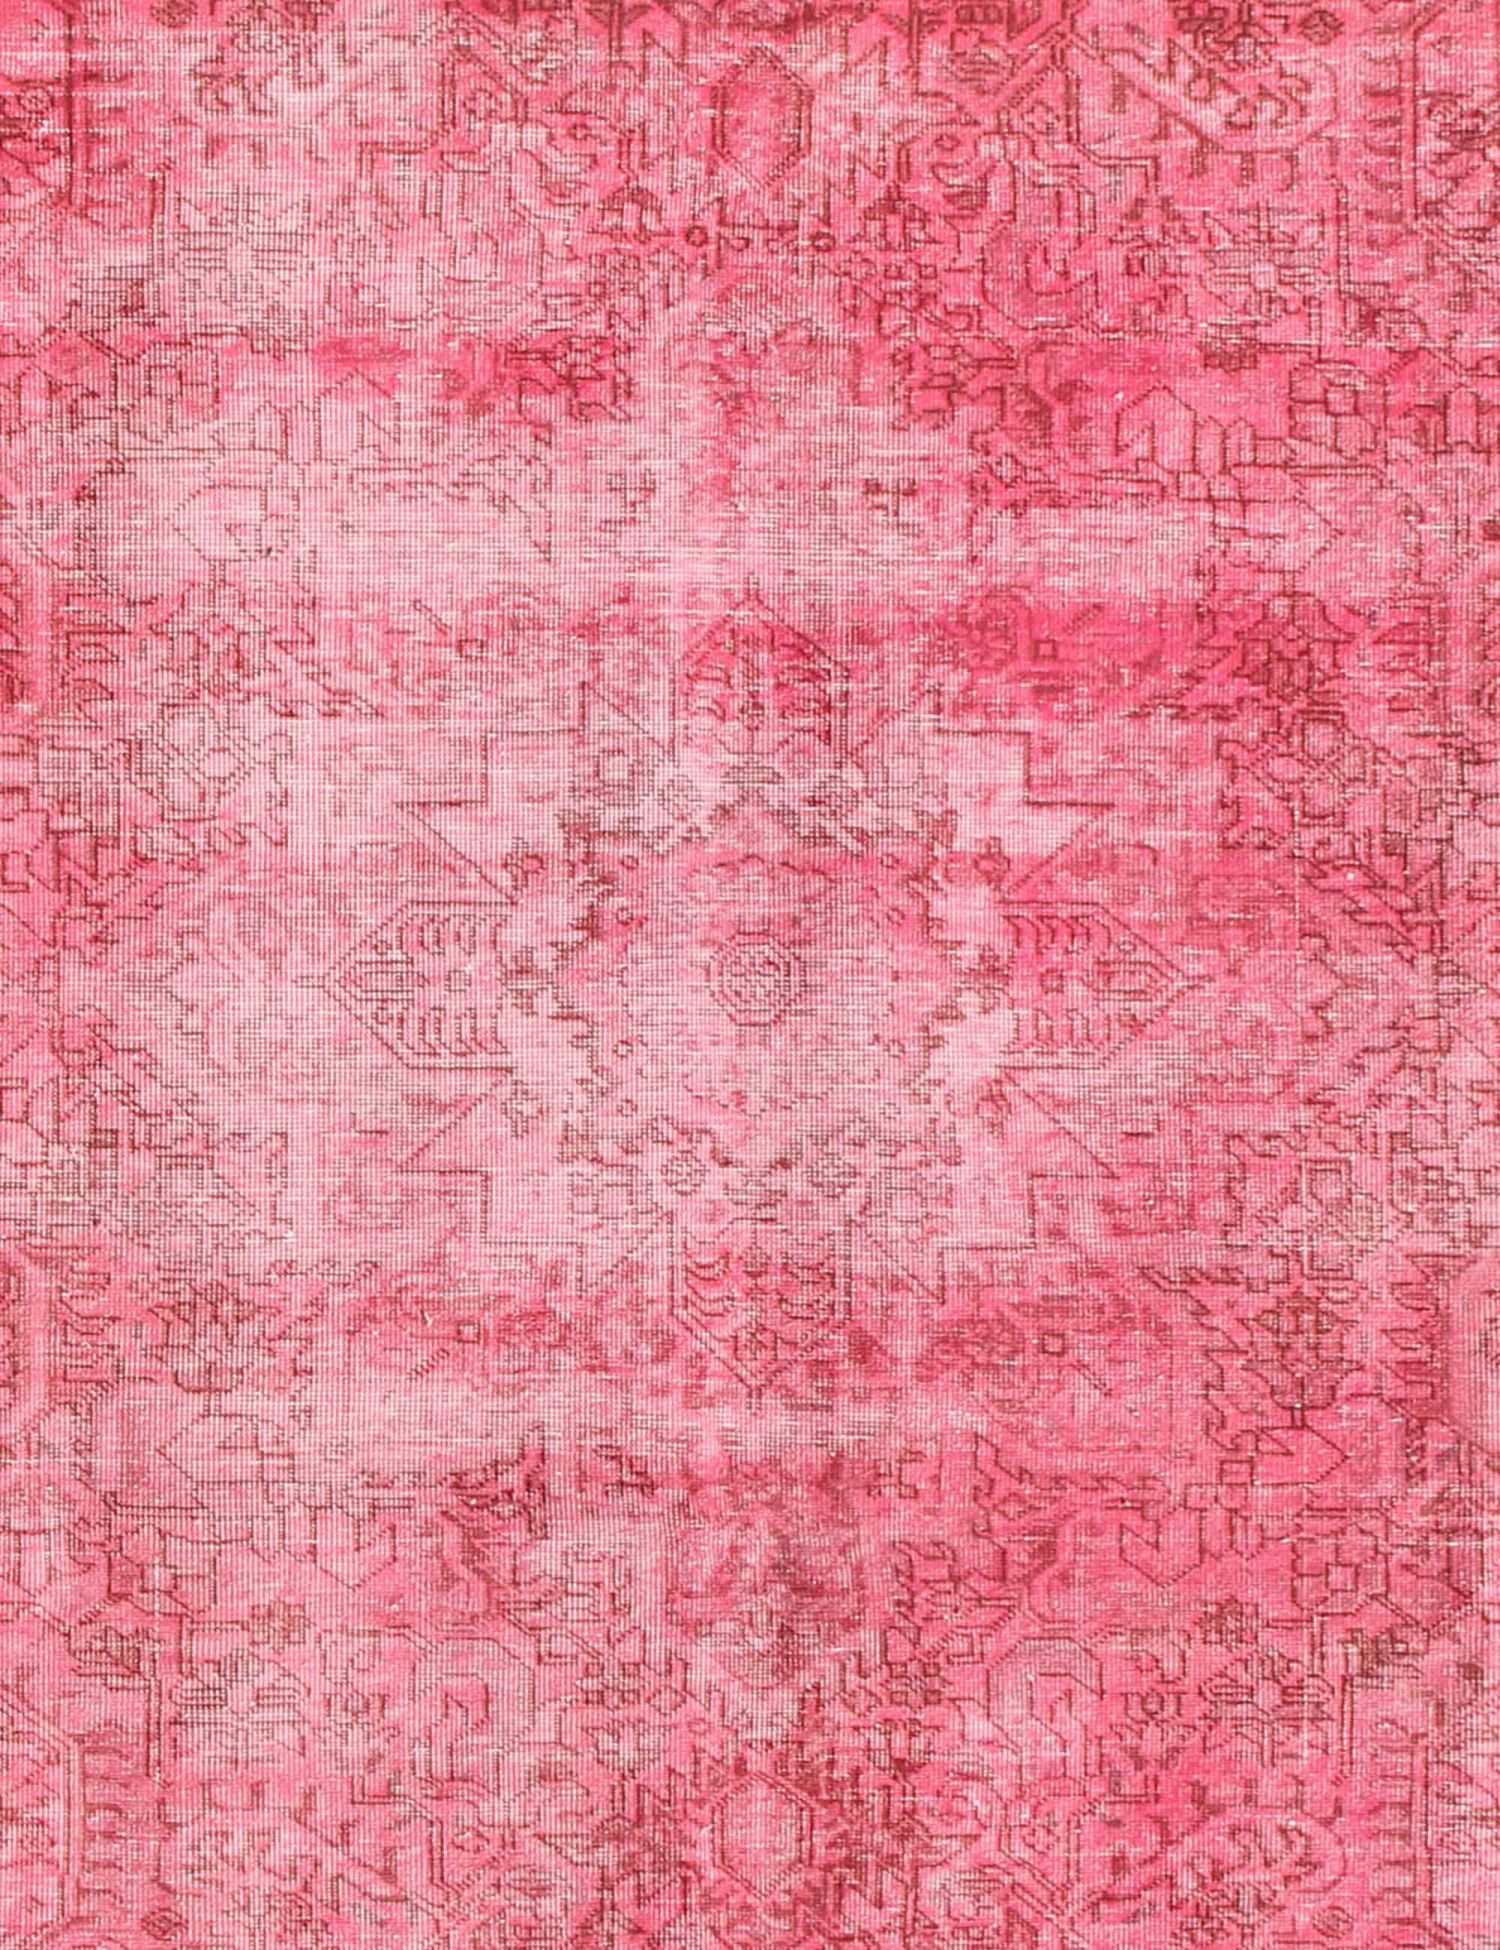 Persischer Vintage Teppich  rosa <br/>295 x 200 cm